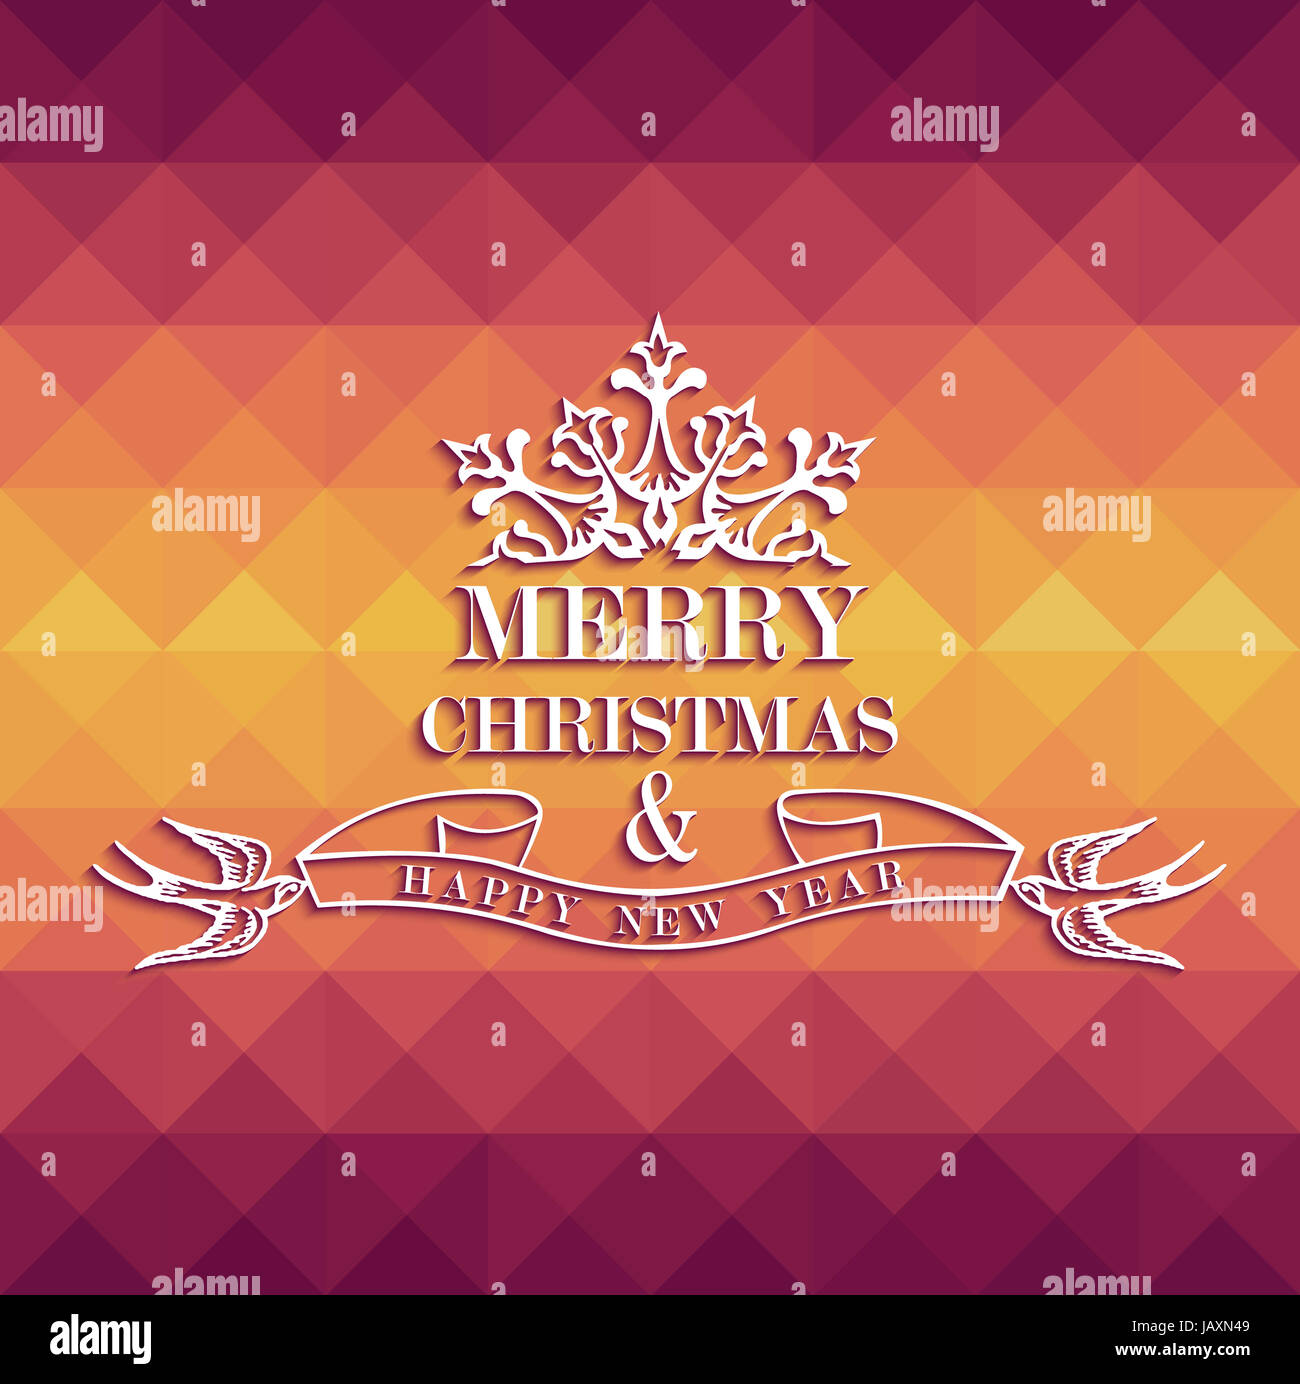 Joyeux Noël avec les couleurs de l'étiquette texte vintage transparent triangle. Fichier vectoriel EPS10 organisé en couches pour l'édition facile. Banque D'Images